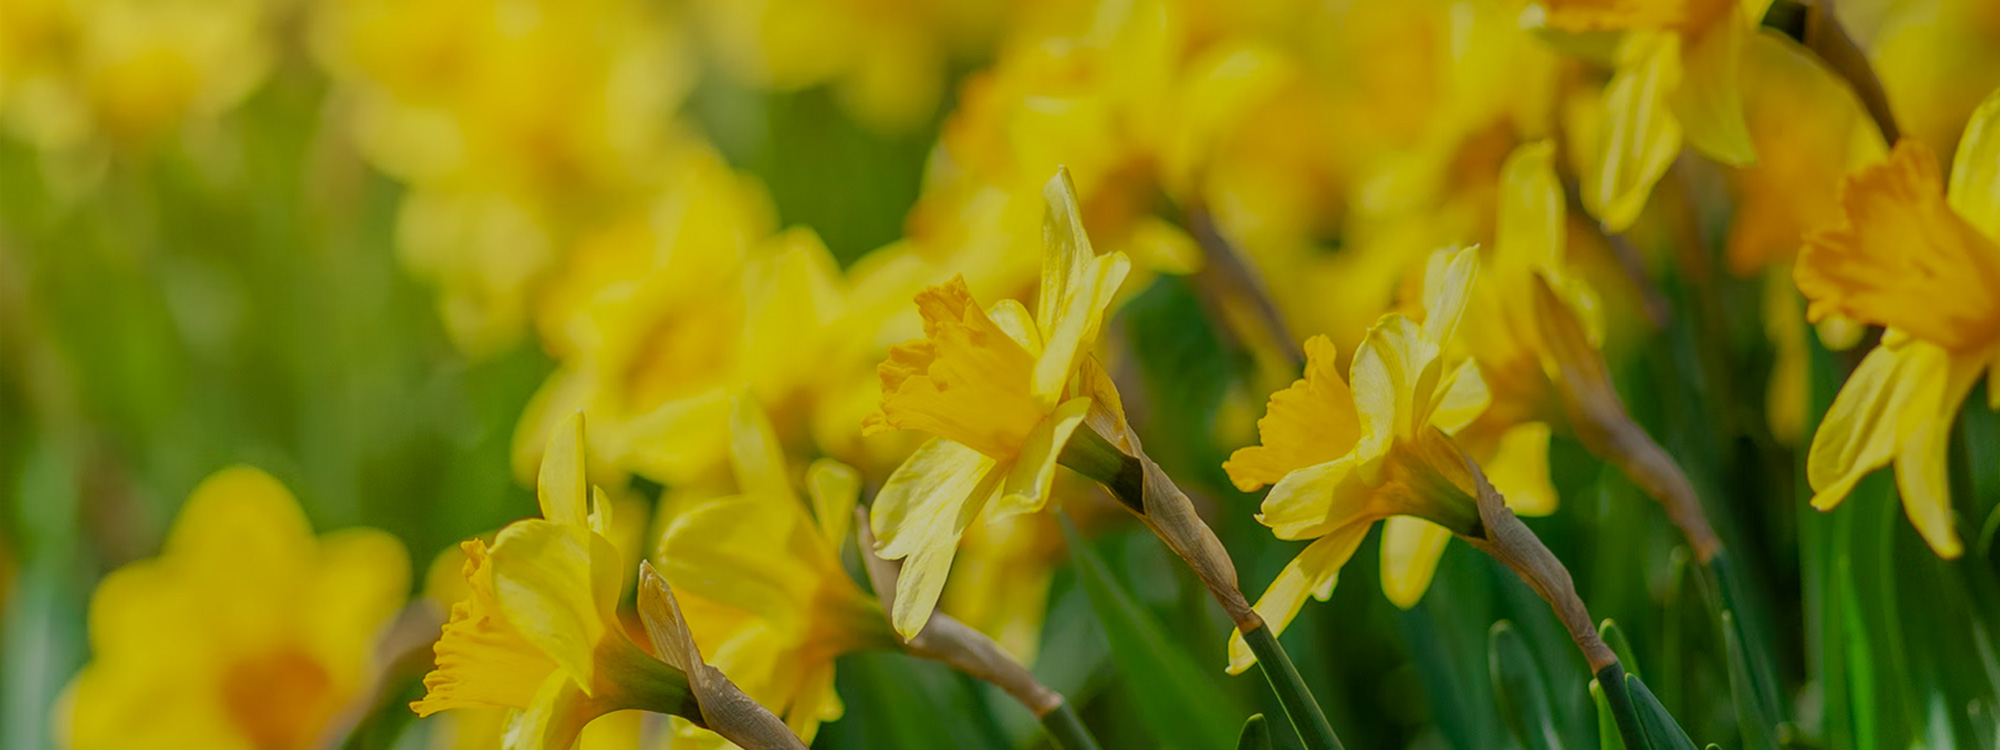 Easter-Daffodils-2-2000x750